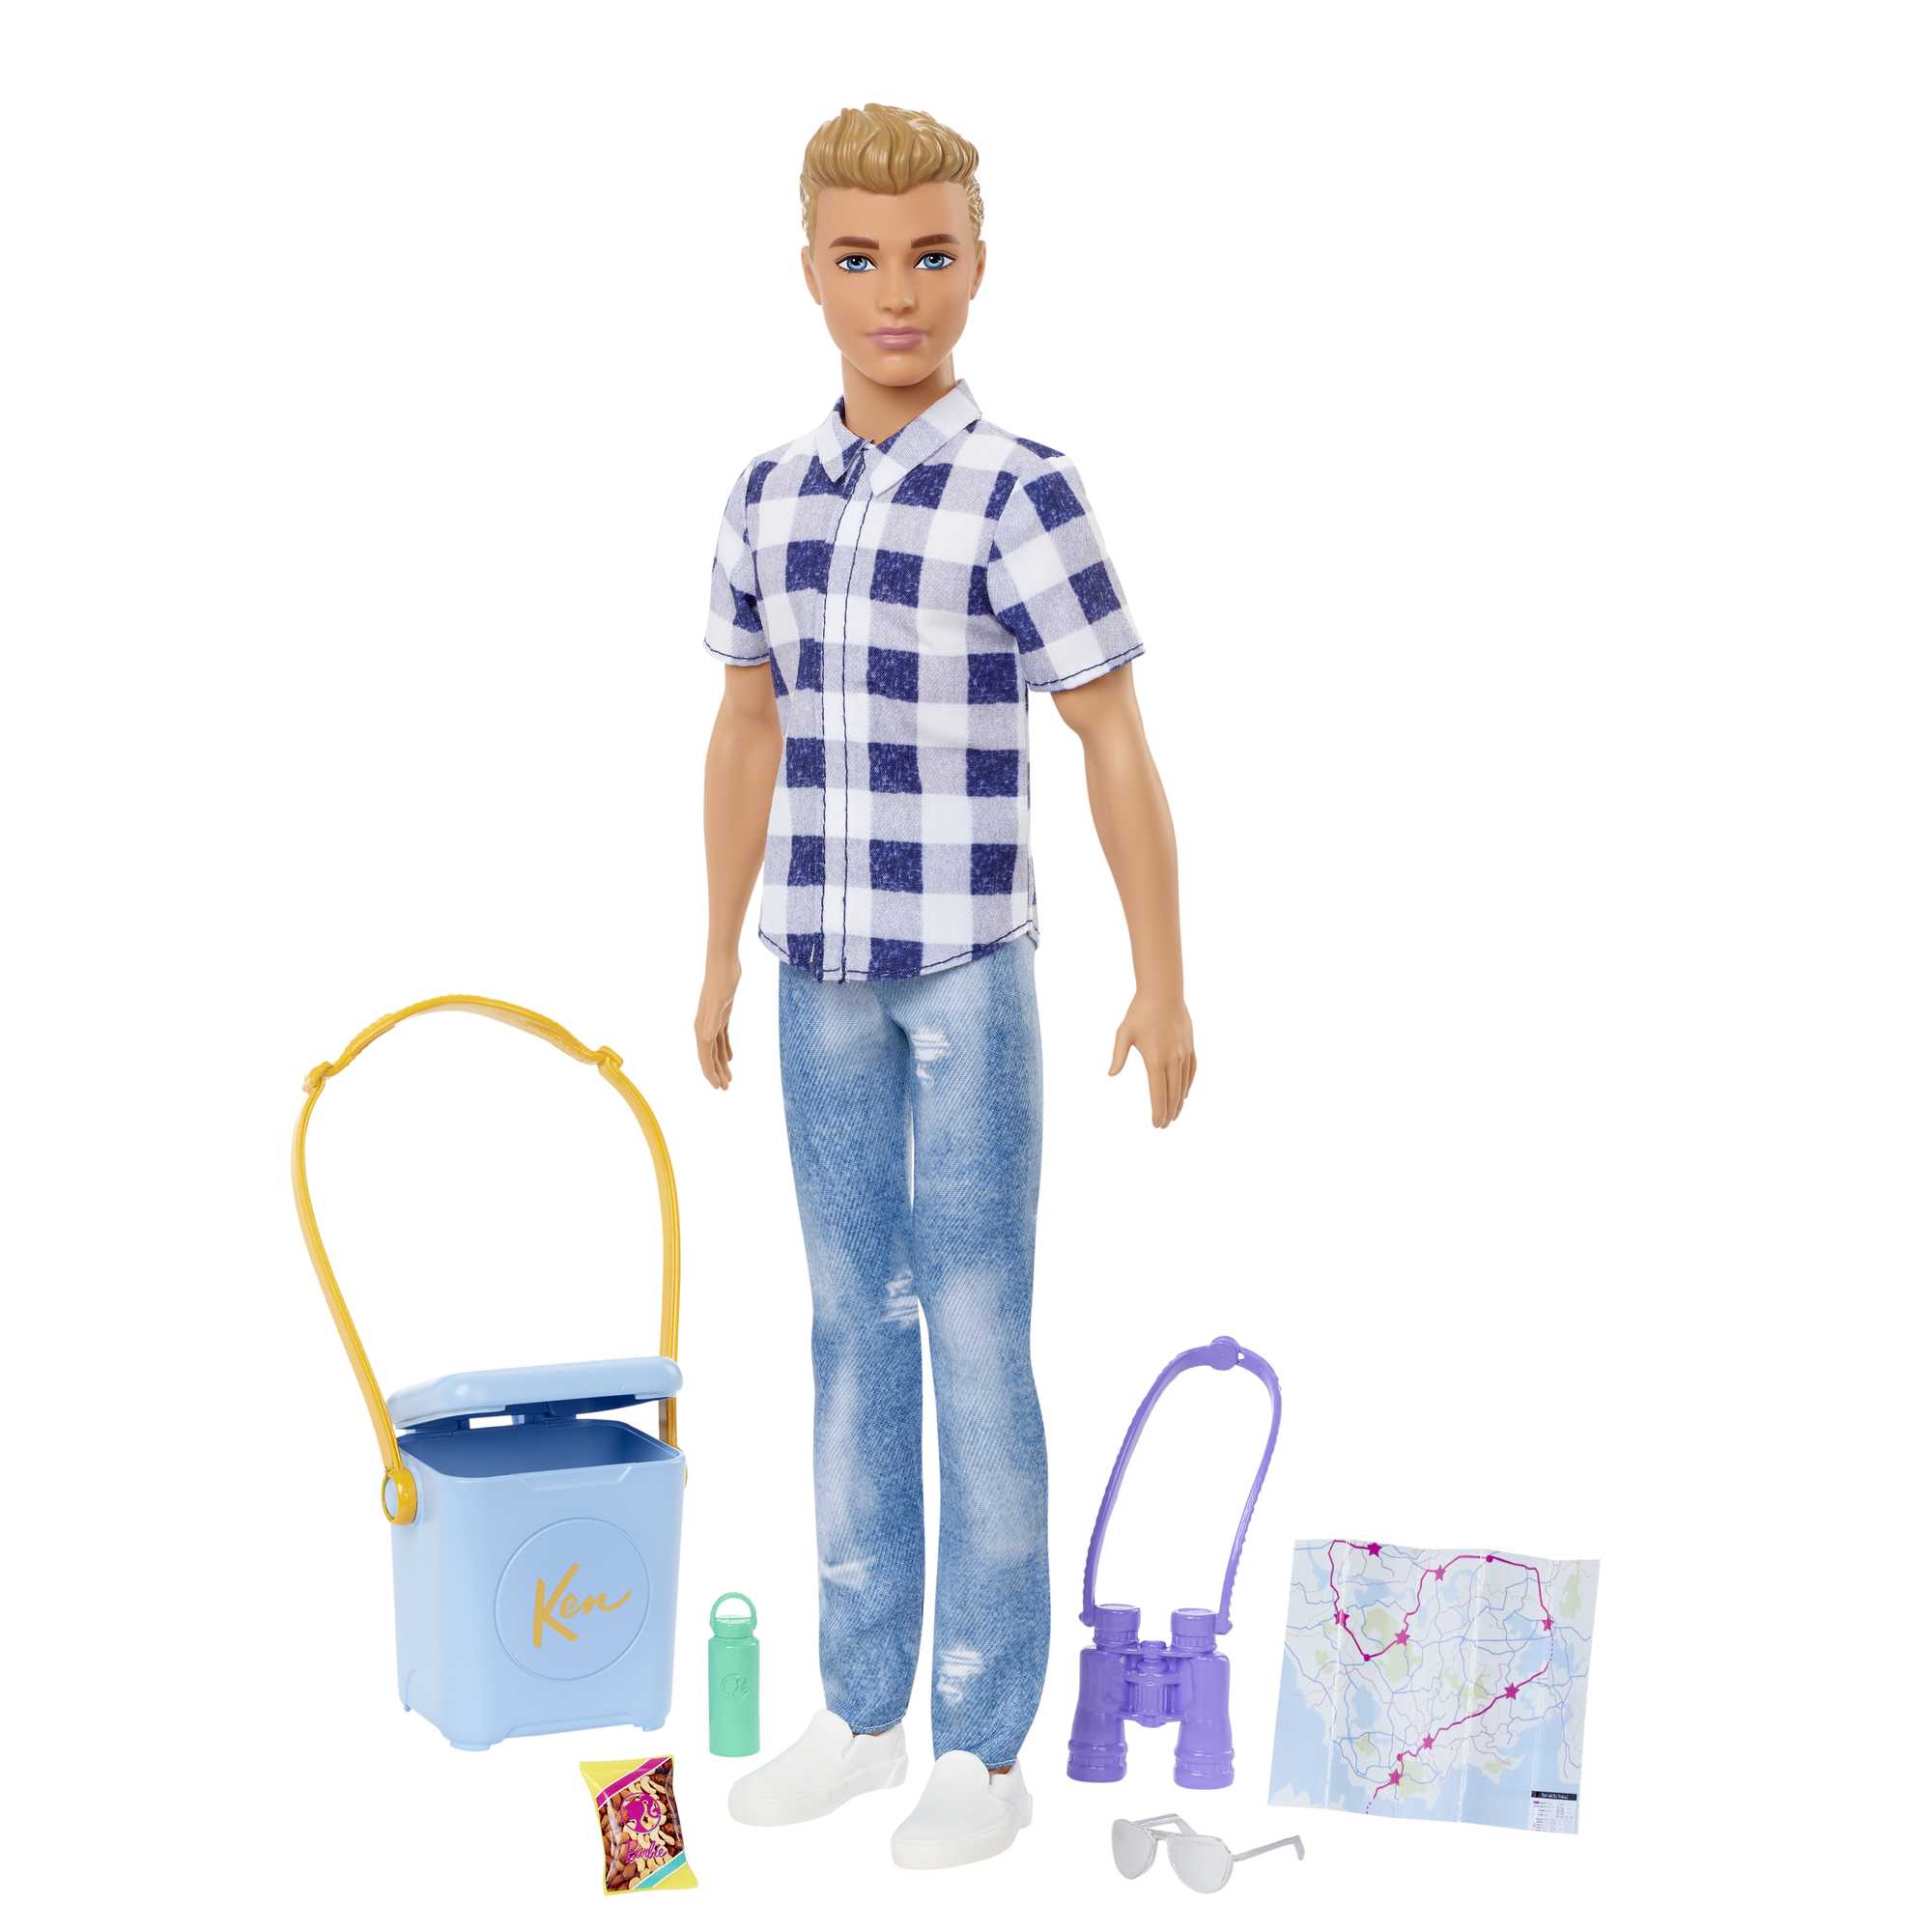 Roupas e Acessórios de boneca Barbie, Blusa Rosa e Saia Tie-Dye Com bolsa e  colar - Mattel HJT19